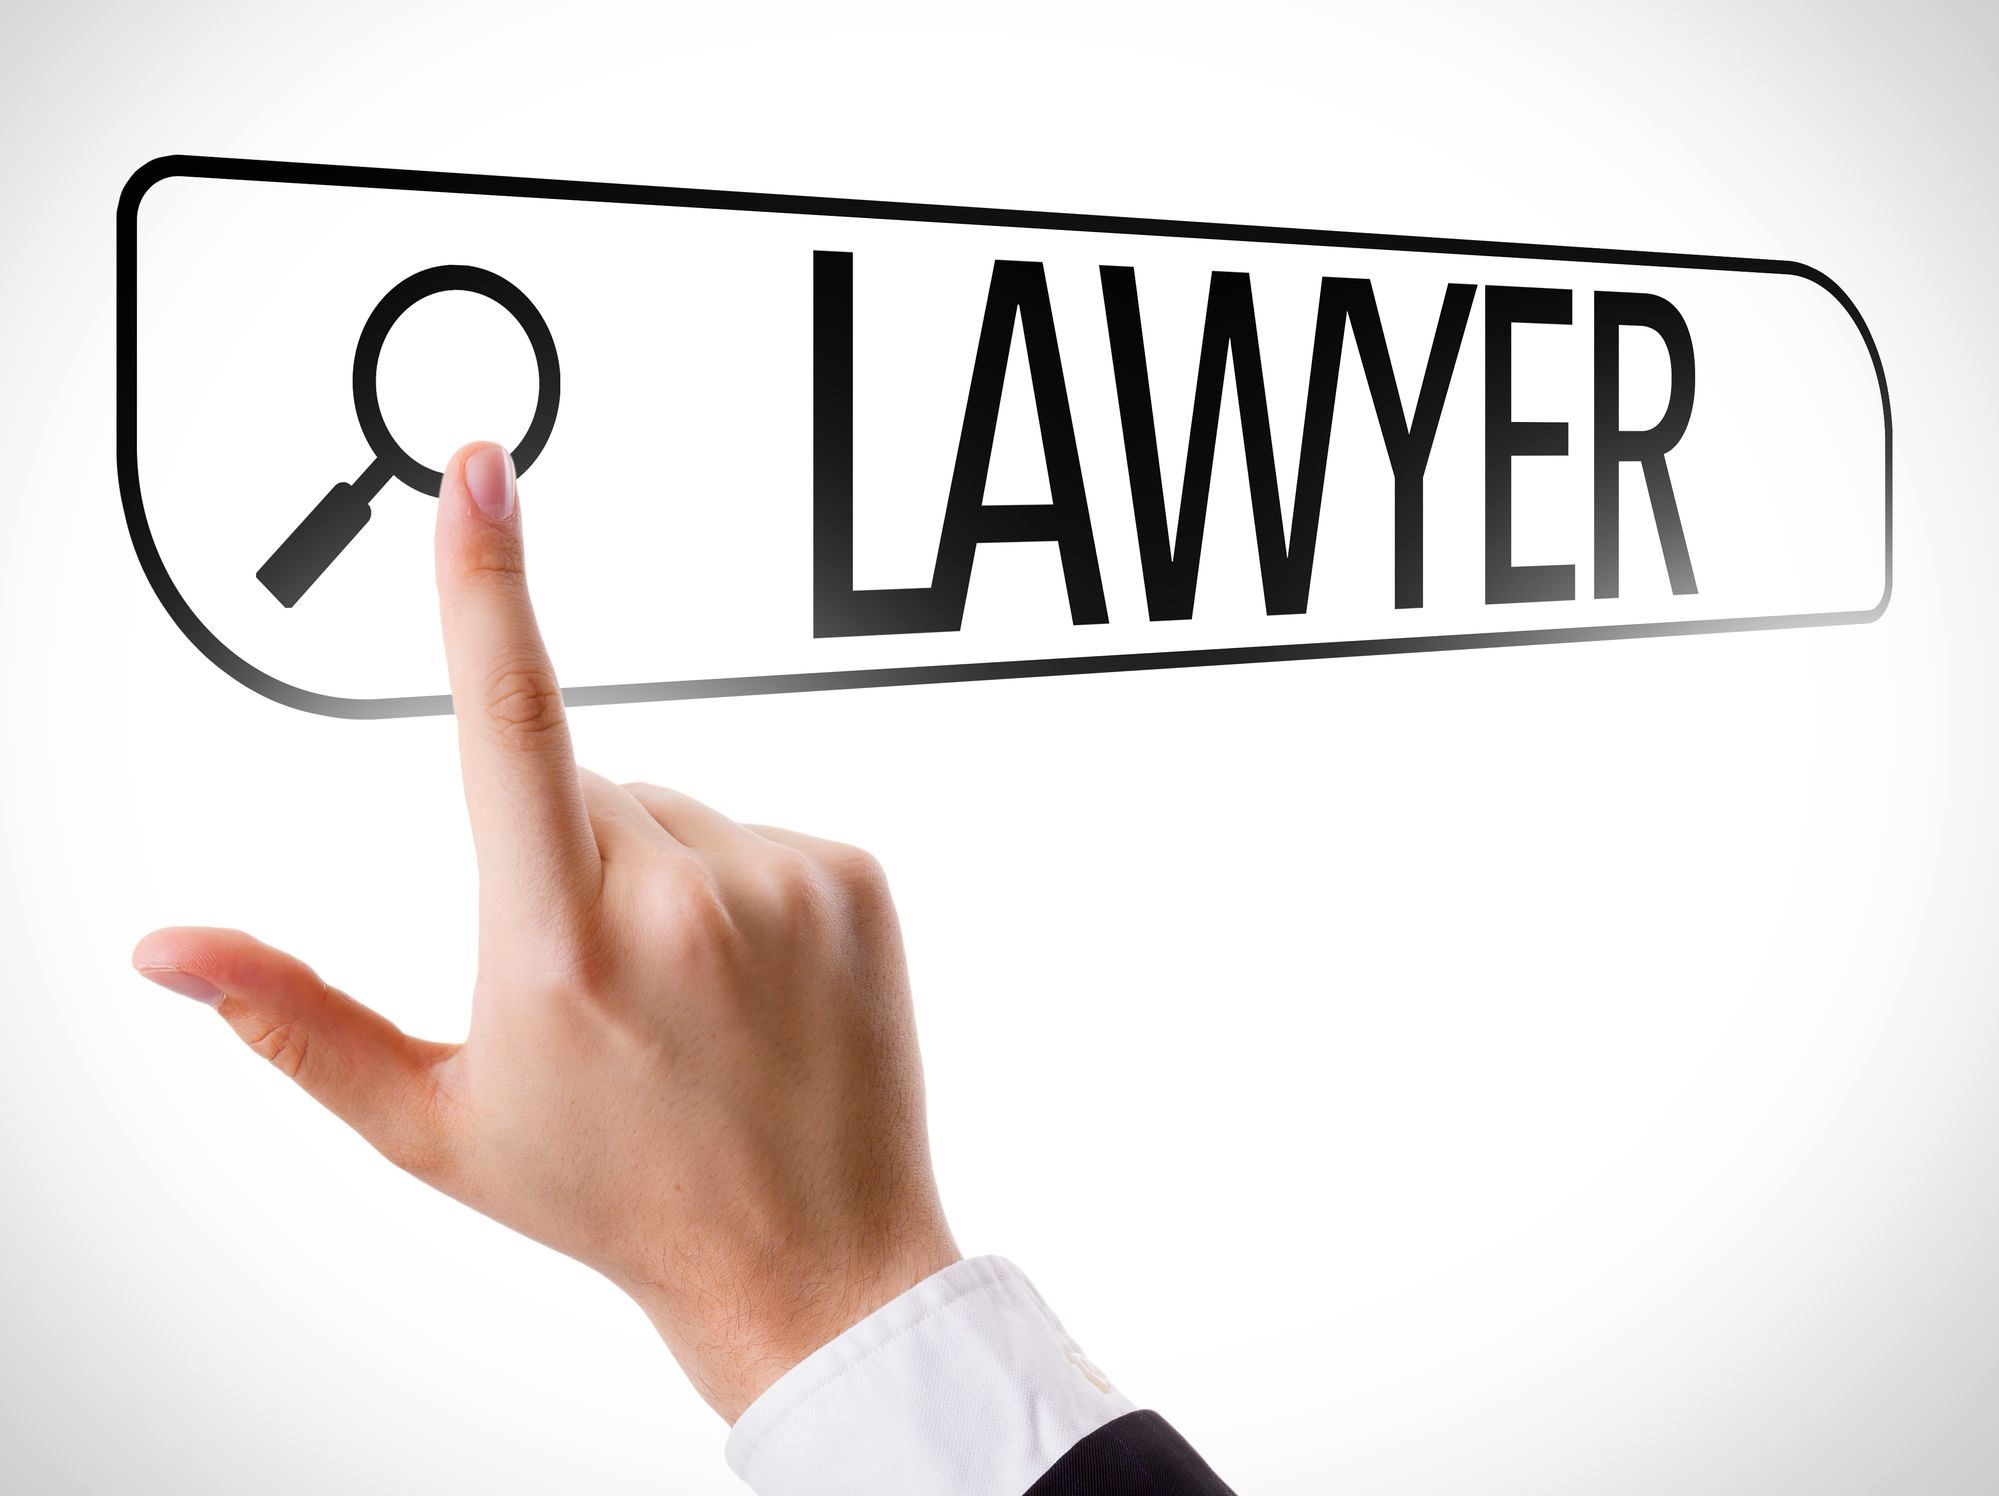 هنگام مواجهه با دعاوی حقوقی و کیفری از چه وکیلی باید کمک بگیریم و شرایط جستجوی وکیل به چه صورت است؟